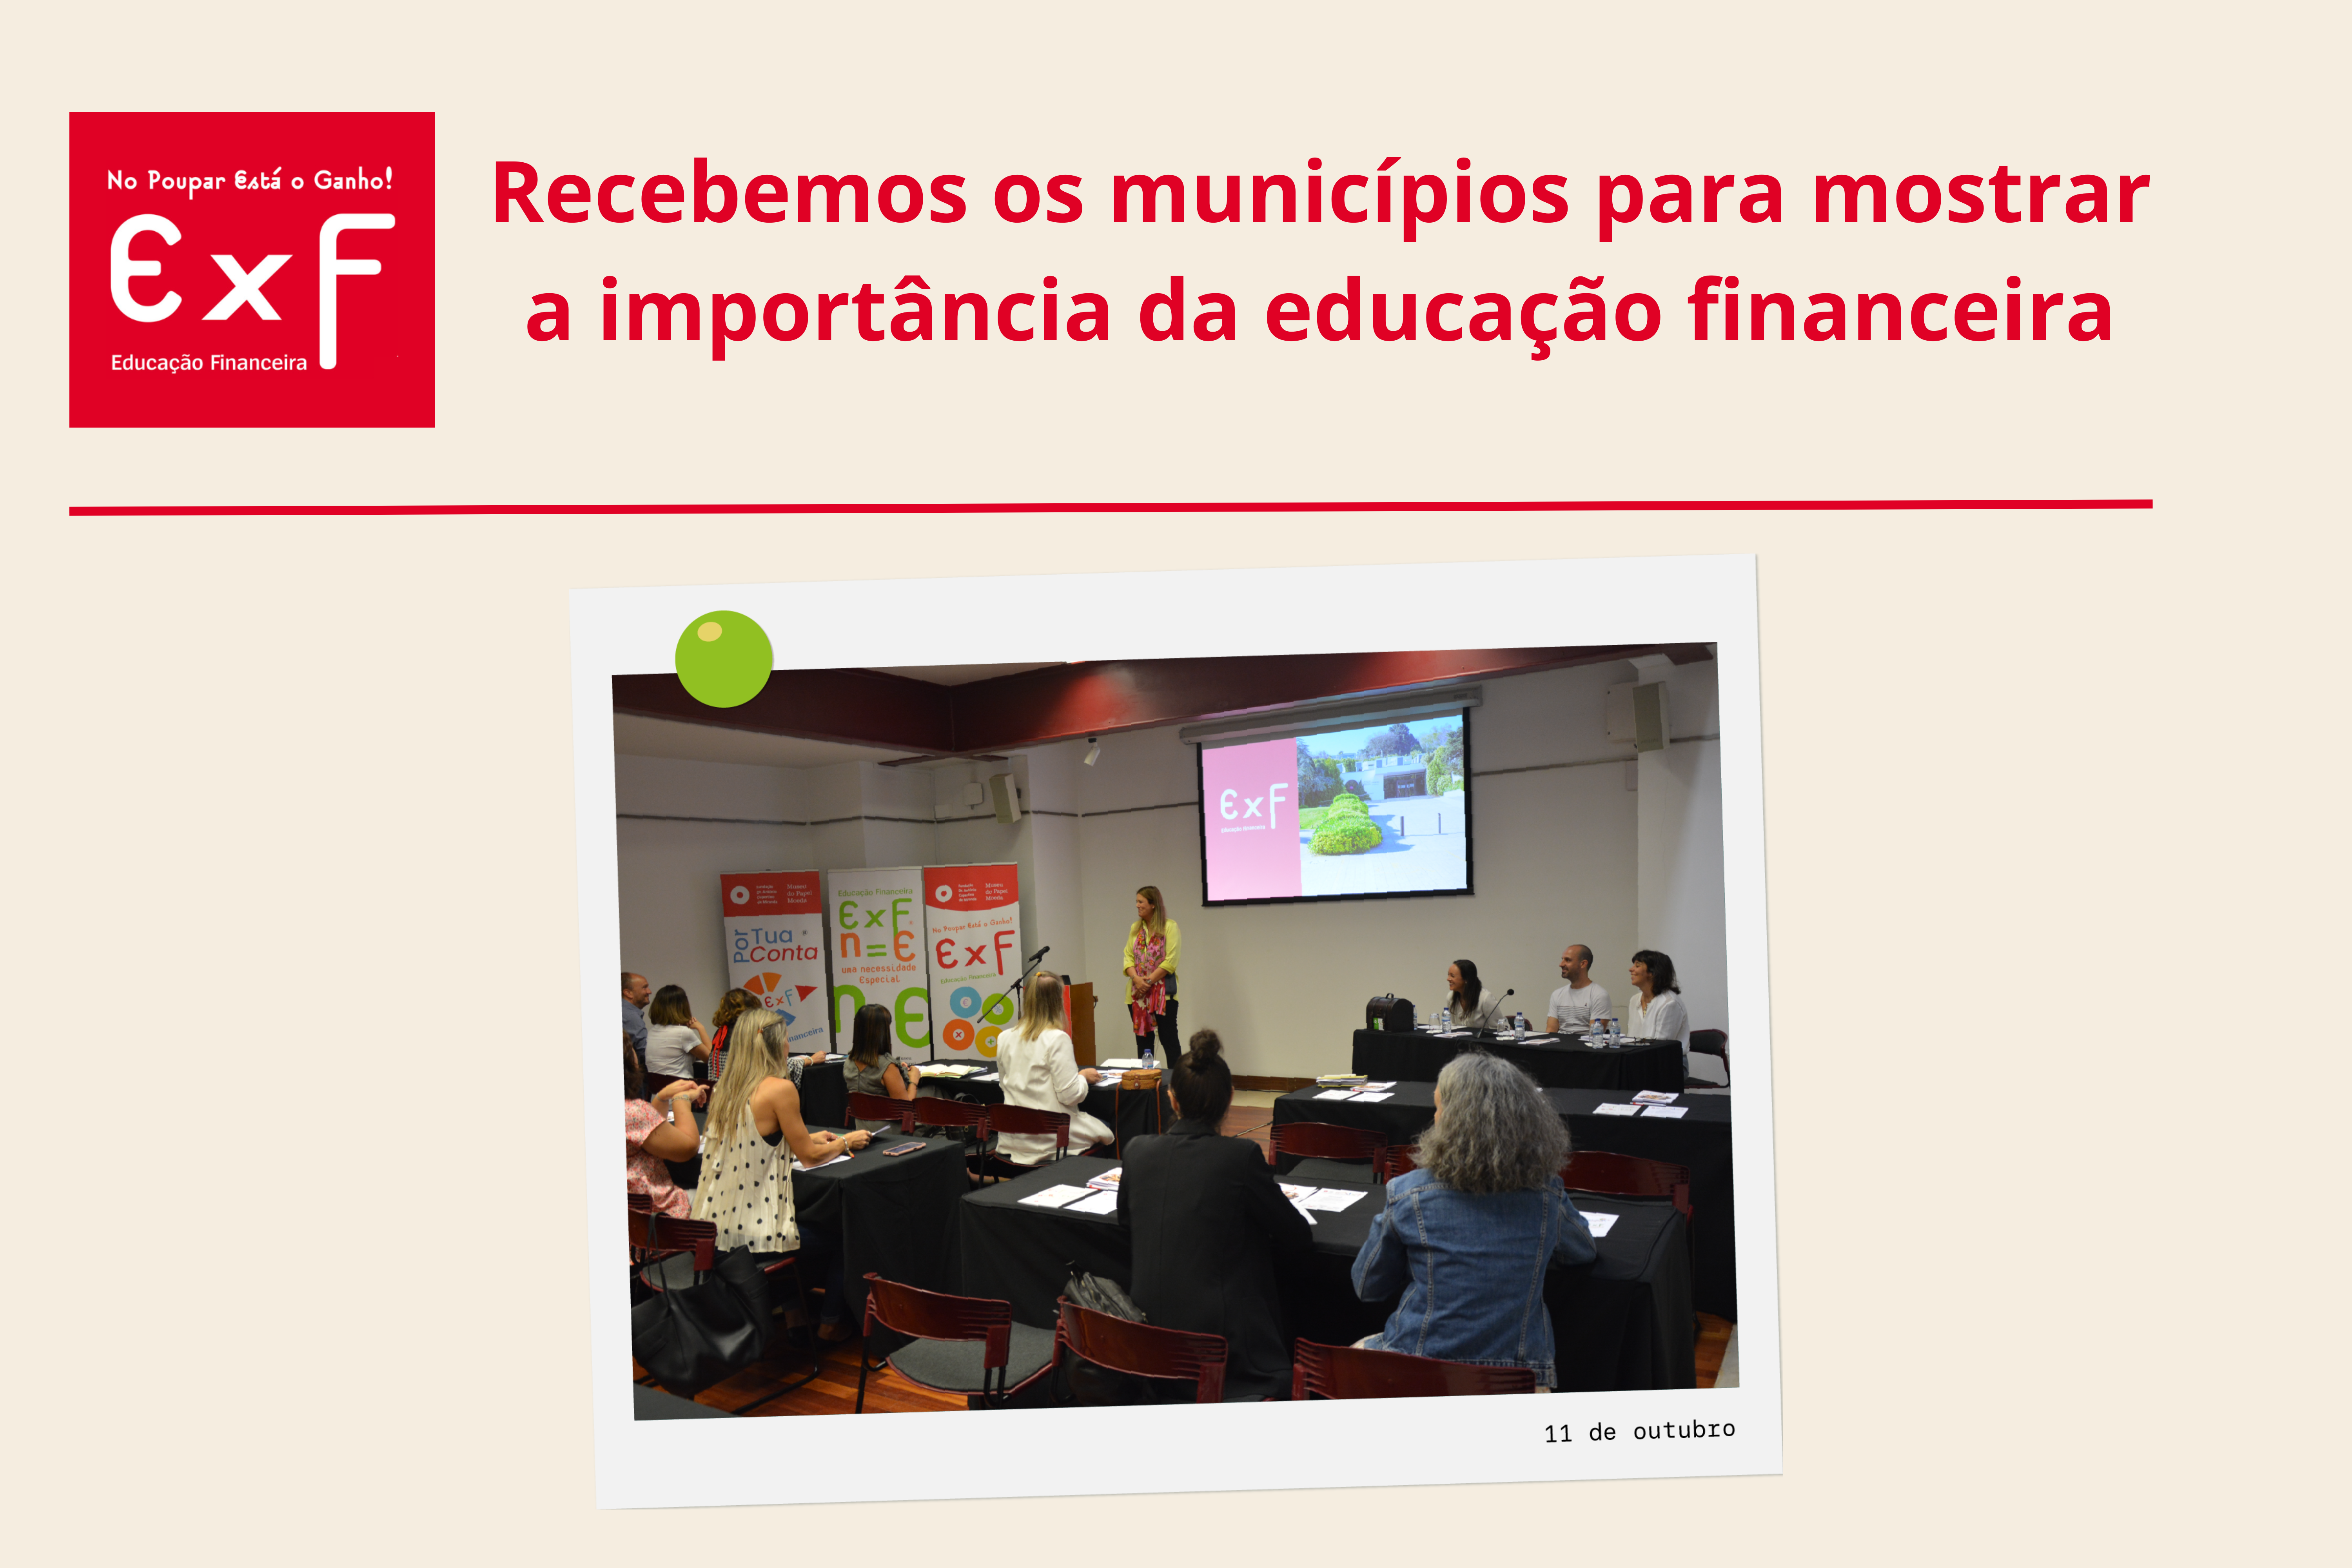 Recebemos os municípios para mostrar a importância da educação financeira